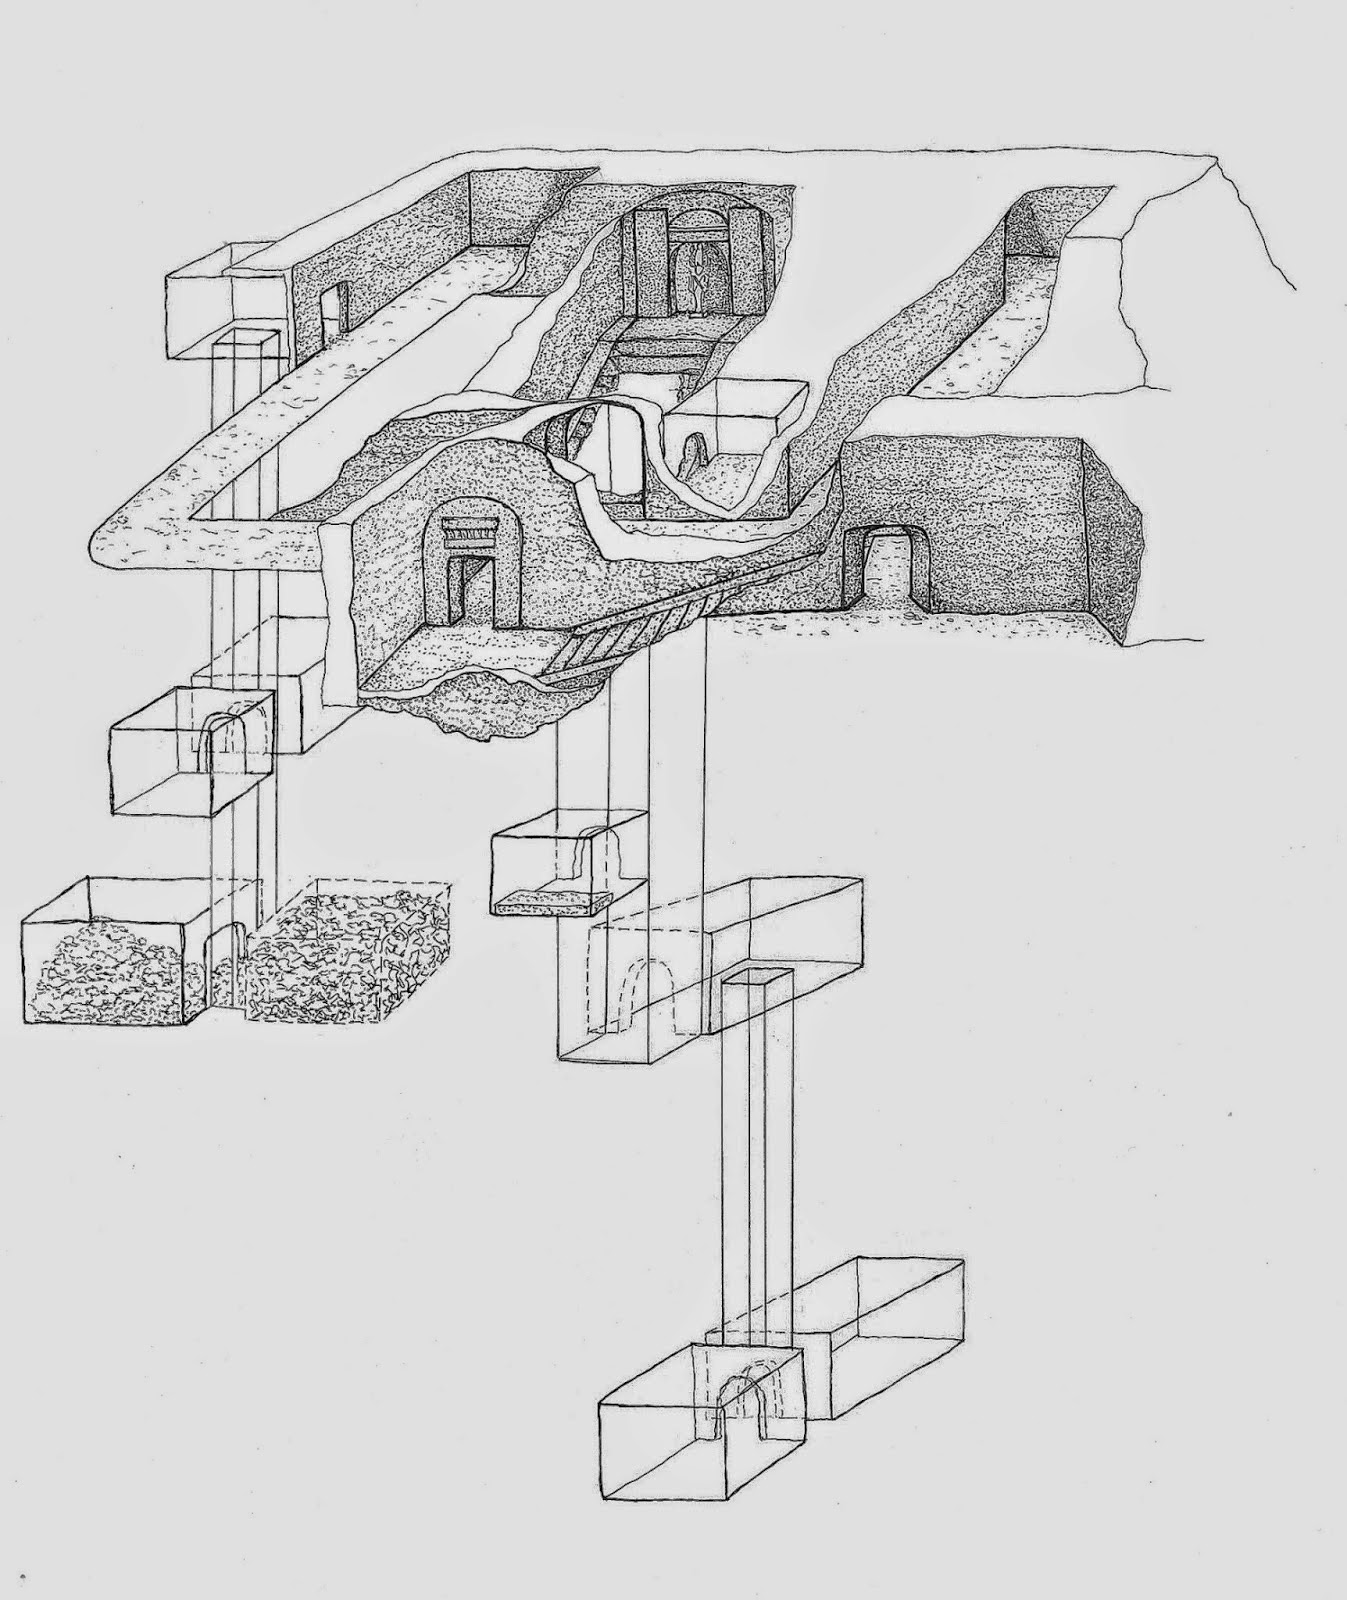 Schets met de omtrek van het graf van Osiris. Tekening van de architectuur van het graf gemaakt door Raffaella Carrera, MinProject (Archeologische Missie Canaria-Toscana).